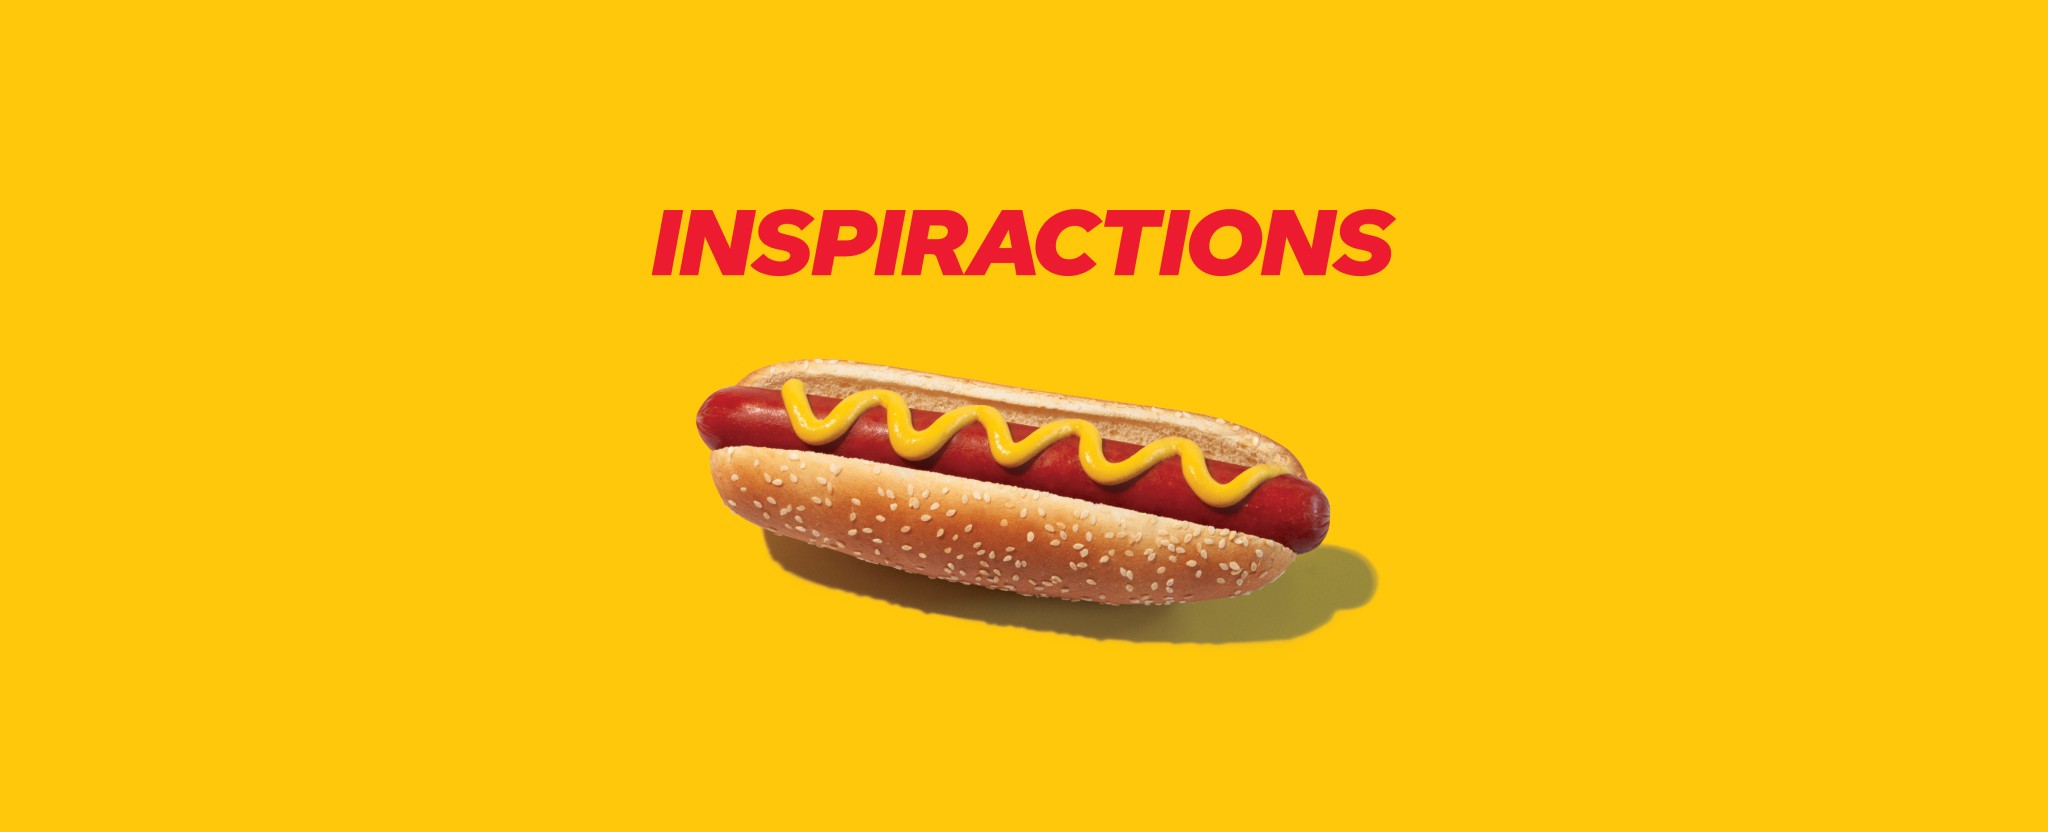 Le logo du magazine INSPIRACTIONS à côté d’un hot dog de Costco.